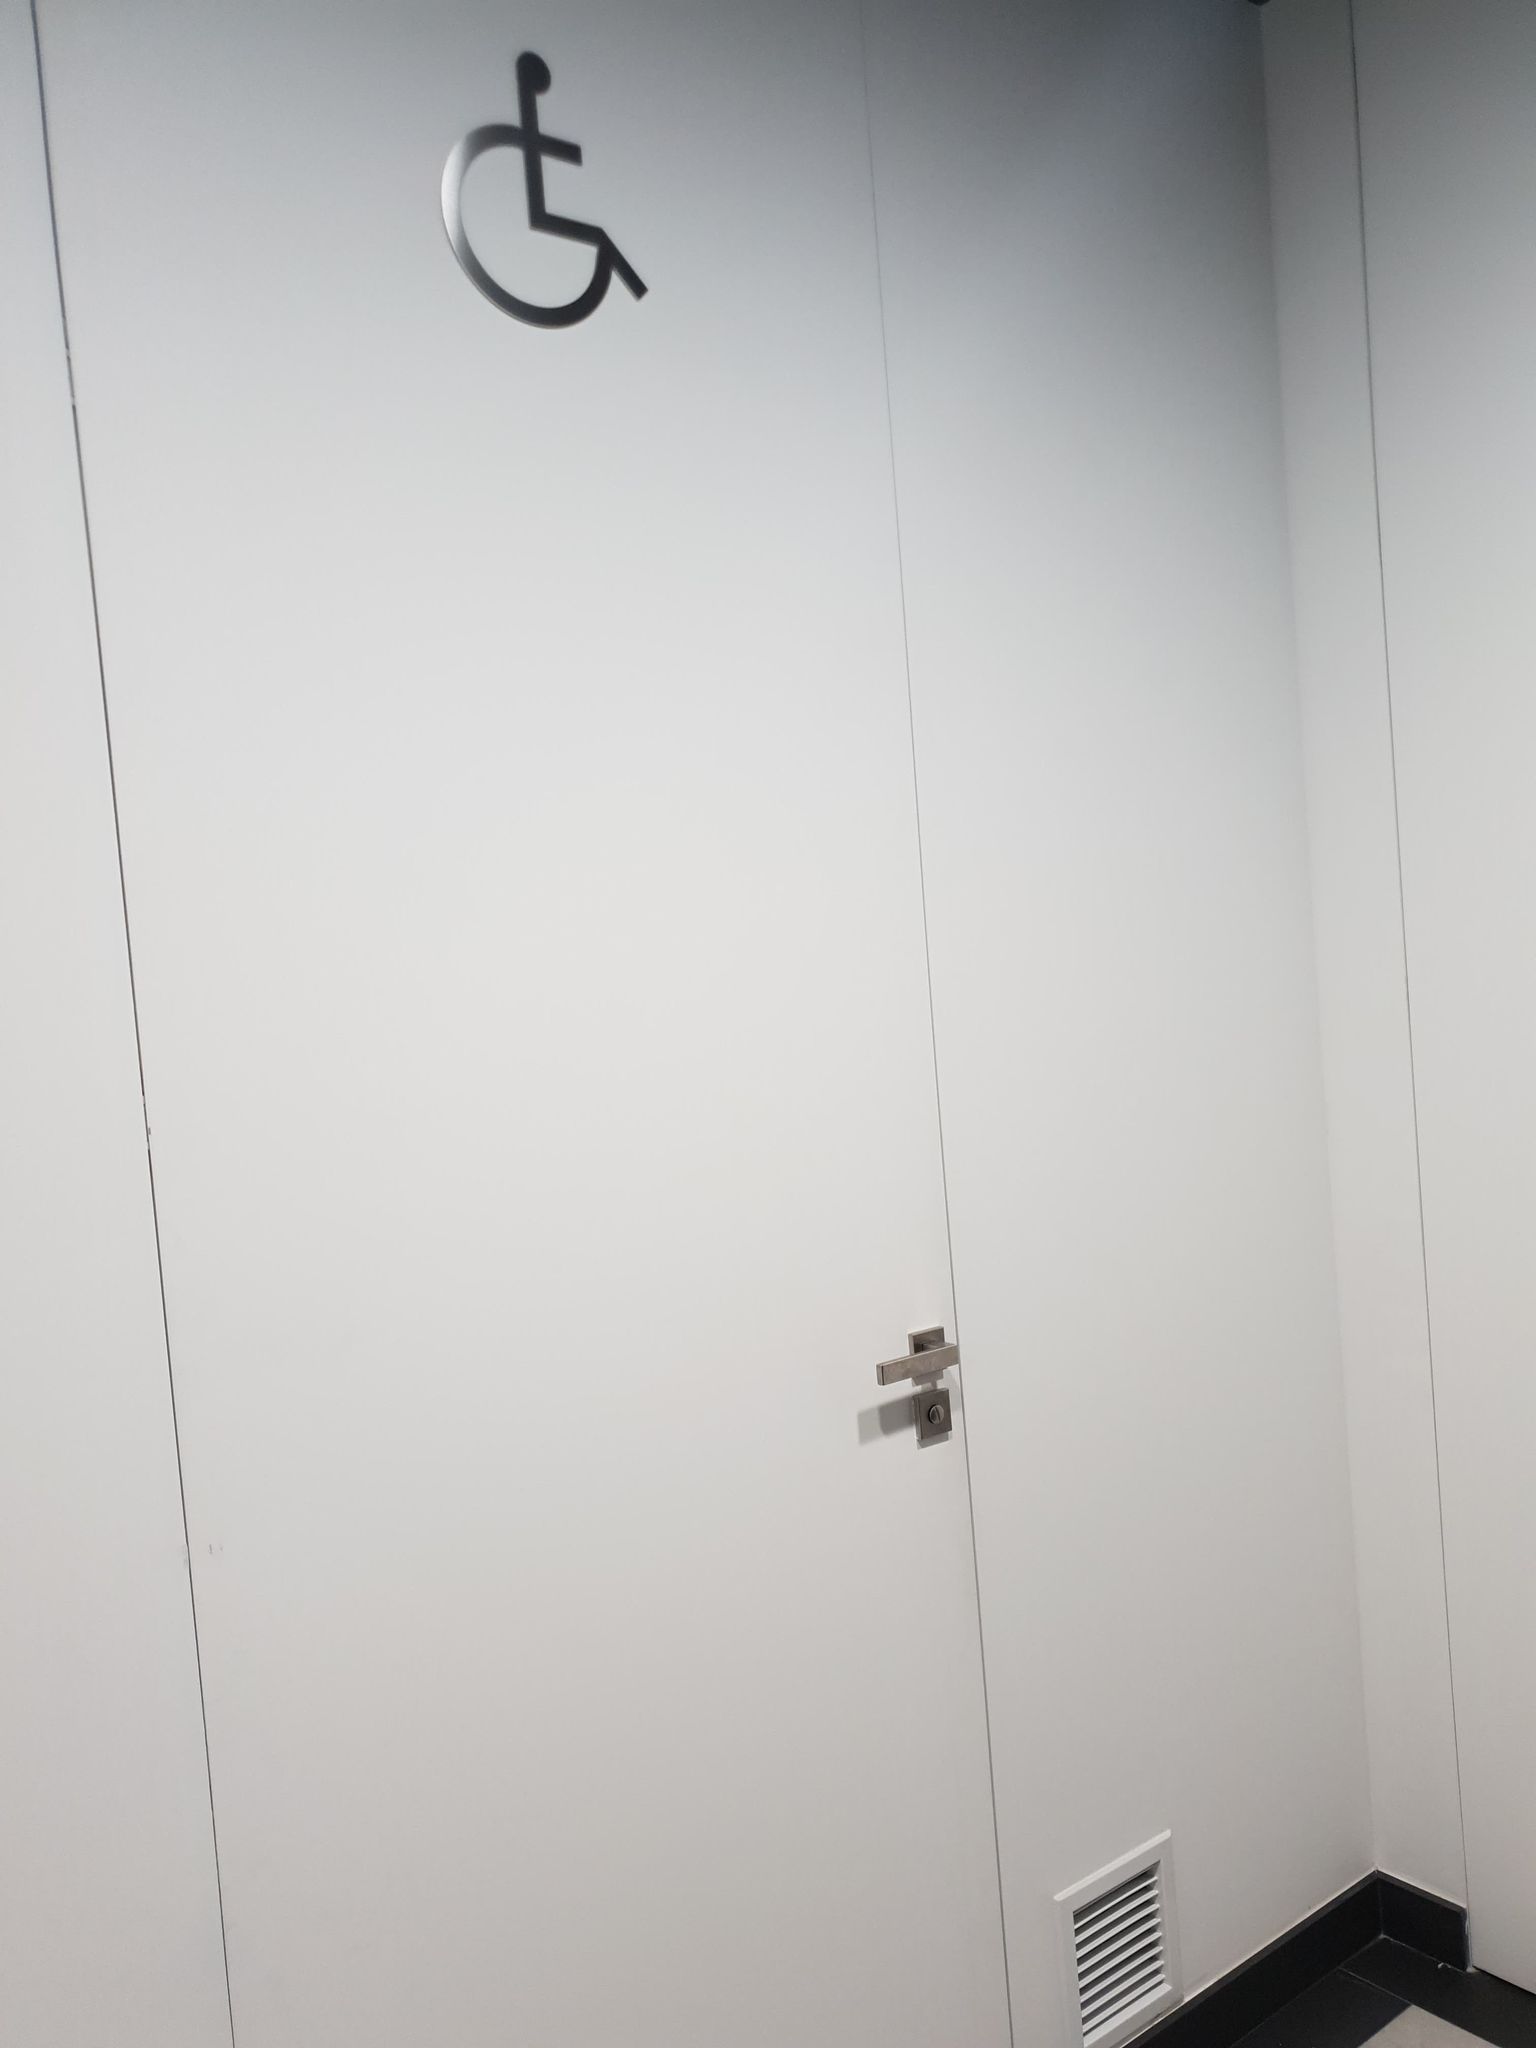 Drzwi wejściowe do toalety dla niepełnosprawnych koloru białego z dużym piktogramem osoby niepełnosprawnej. 